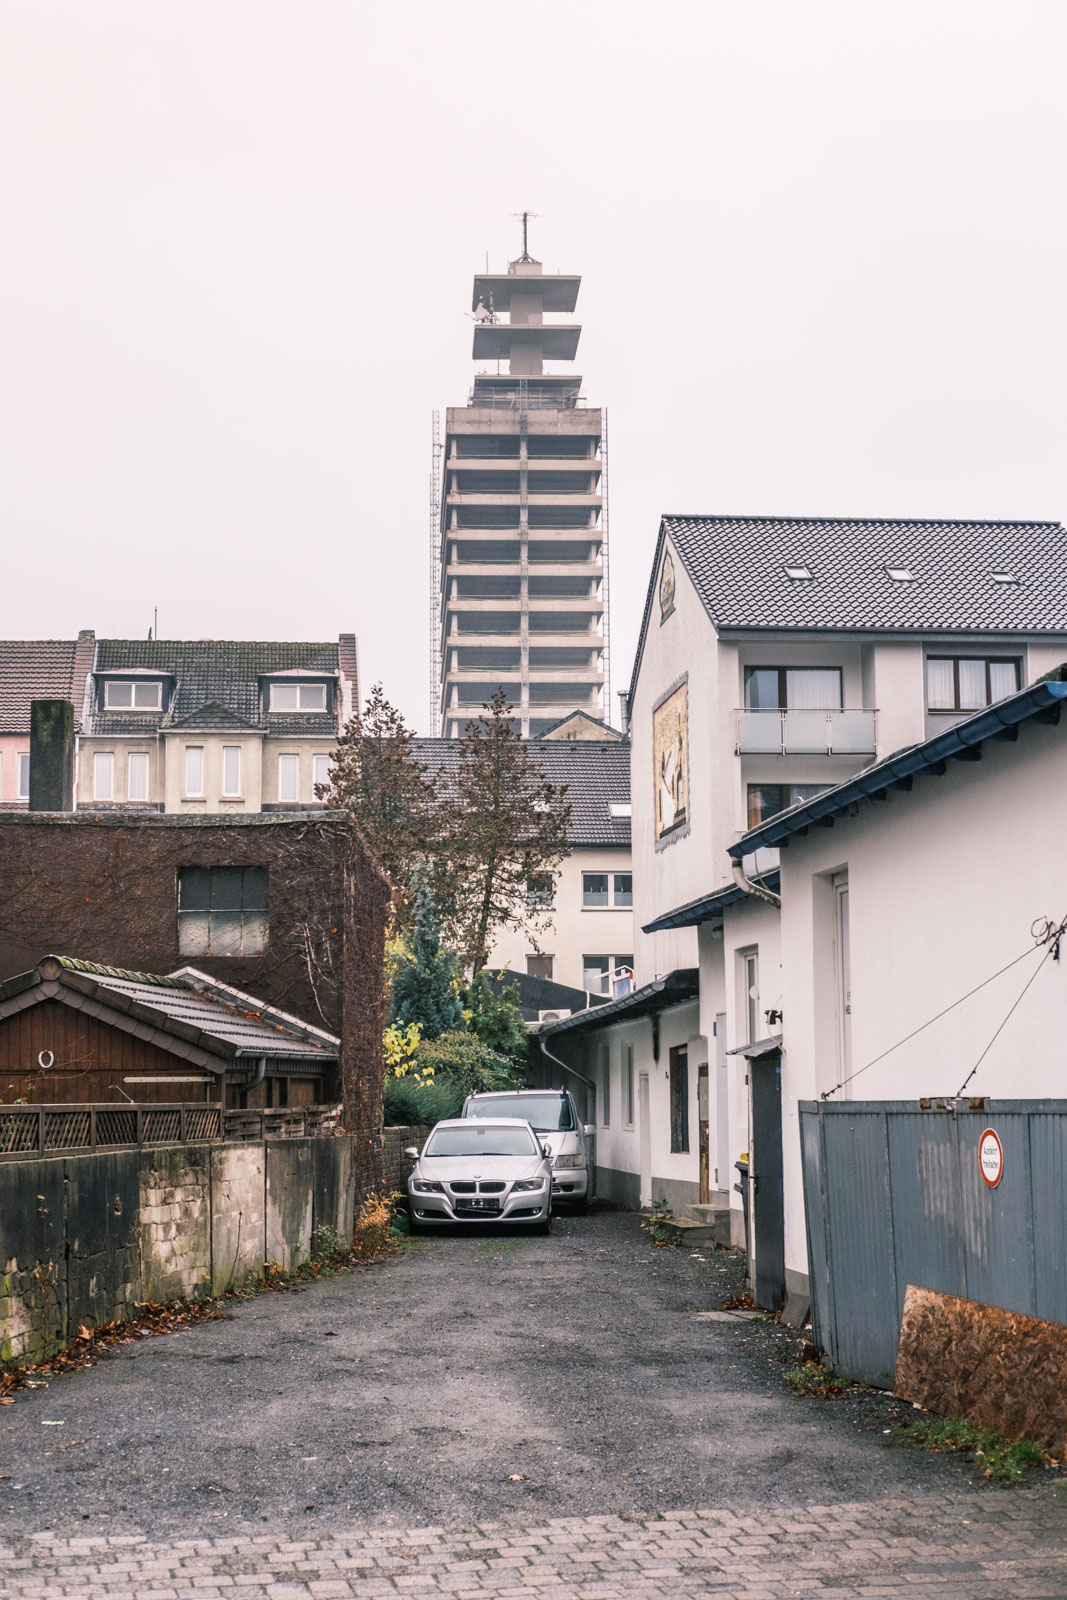 Old Telekom high-rise - Views in November (Bielefeld, Germany).